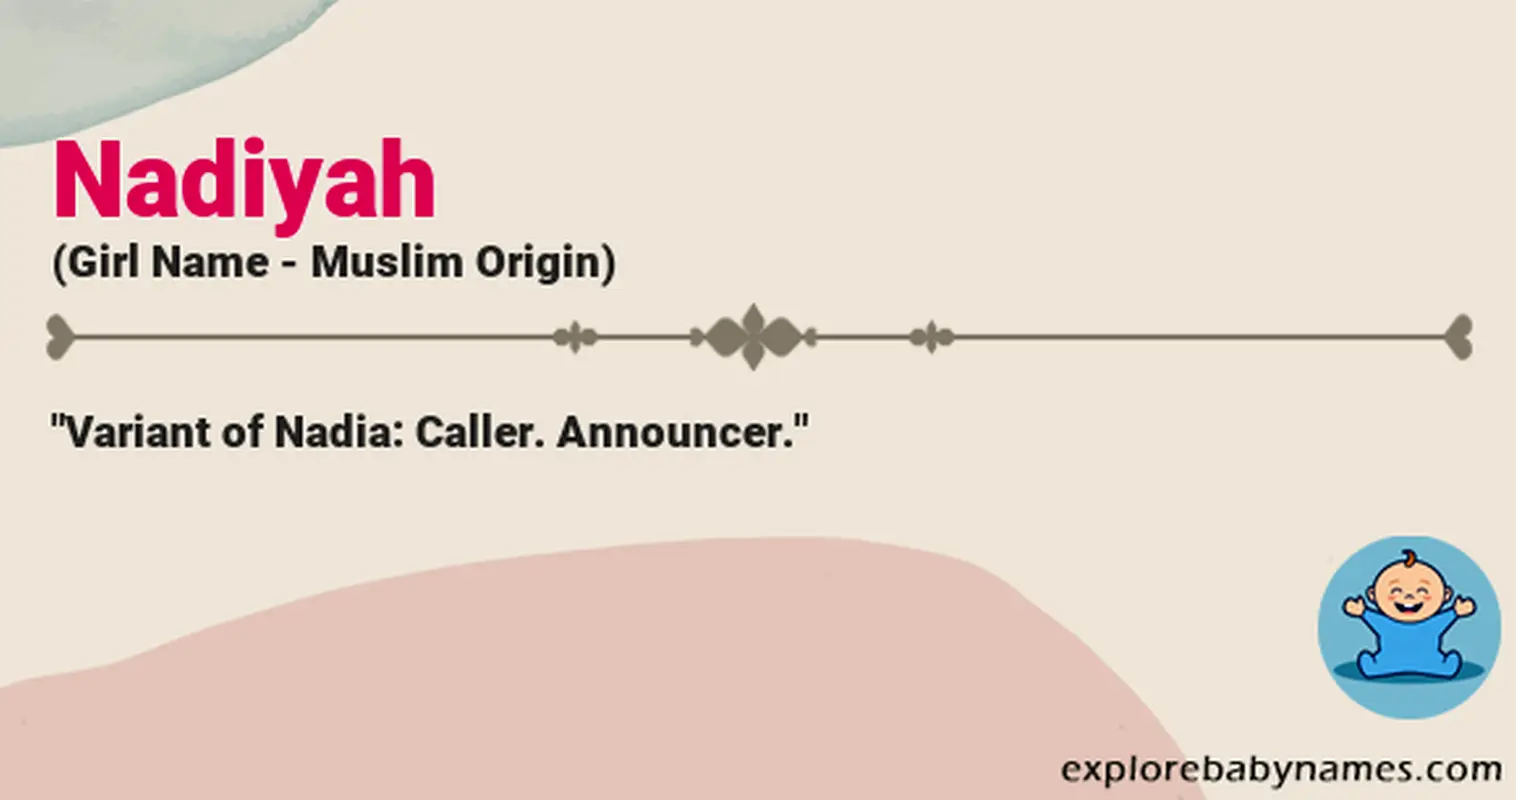 Meaning of Nadiyah